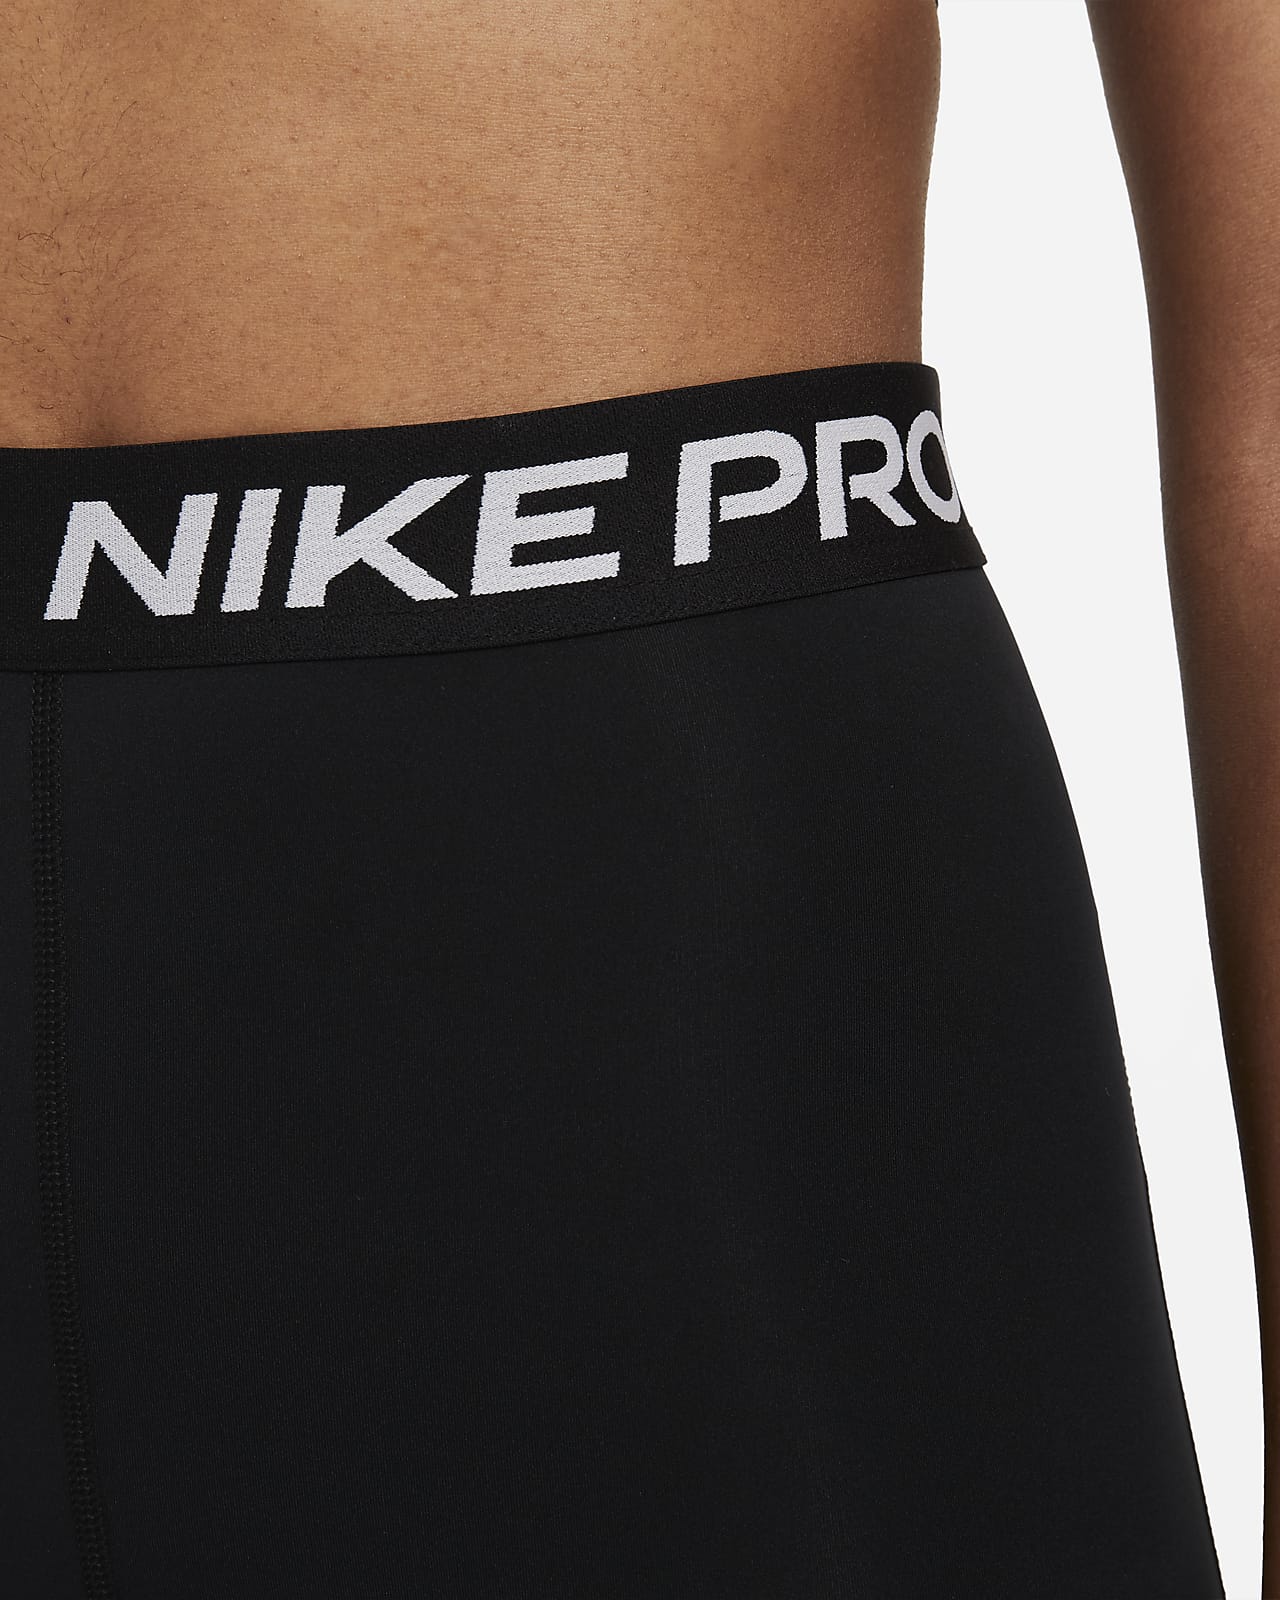 Nike Pro 365 középmagas derekú, rövidített szabású, hálós paneles